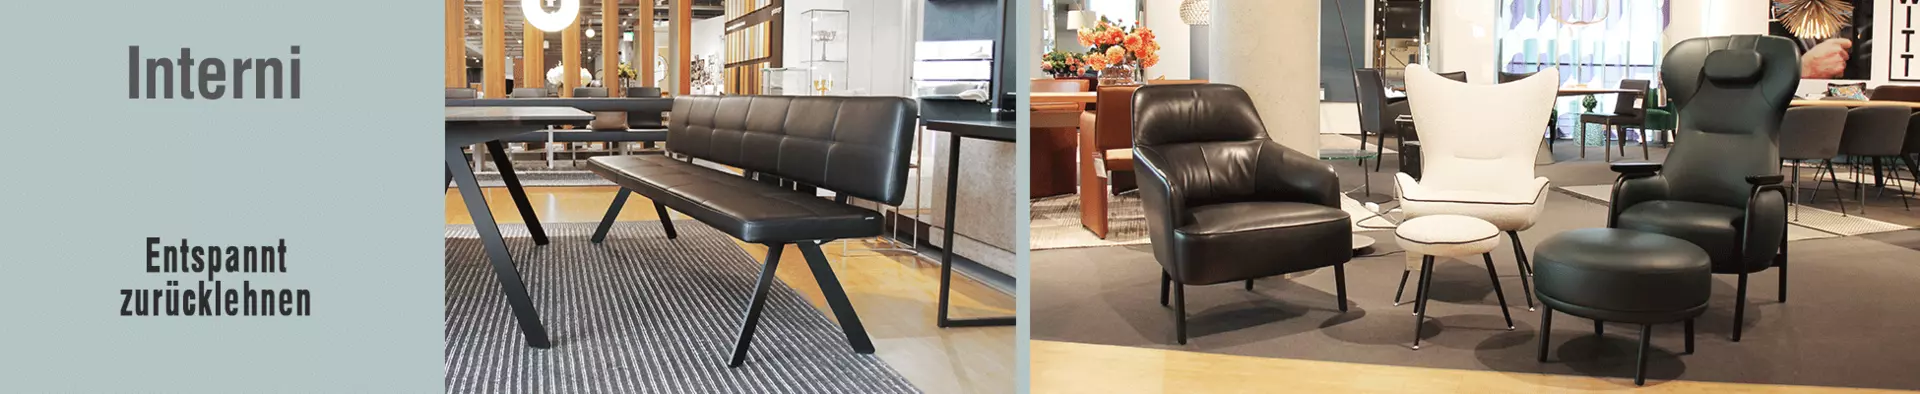 Entspannt zurücklehnen - komfortable Sitzgelegenheiten in edlen Designs bei interni by inhofer